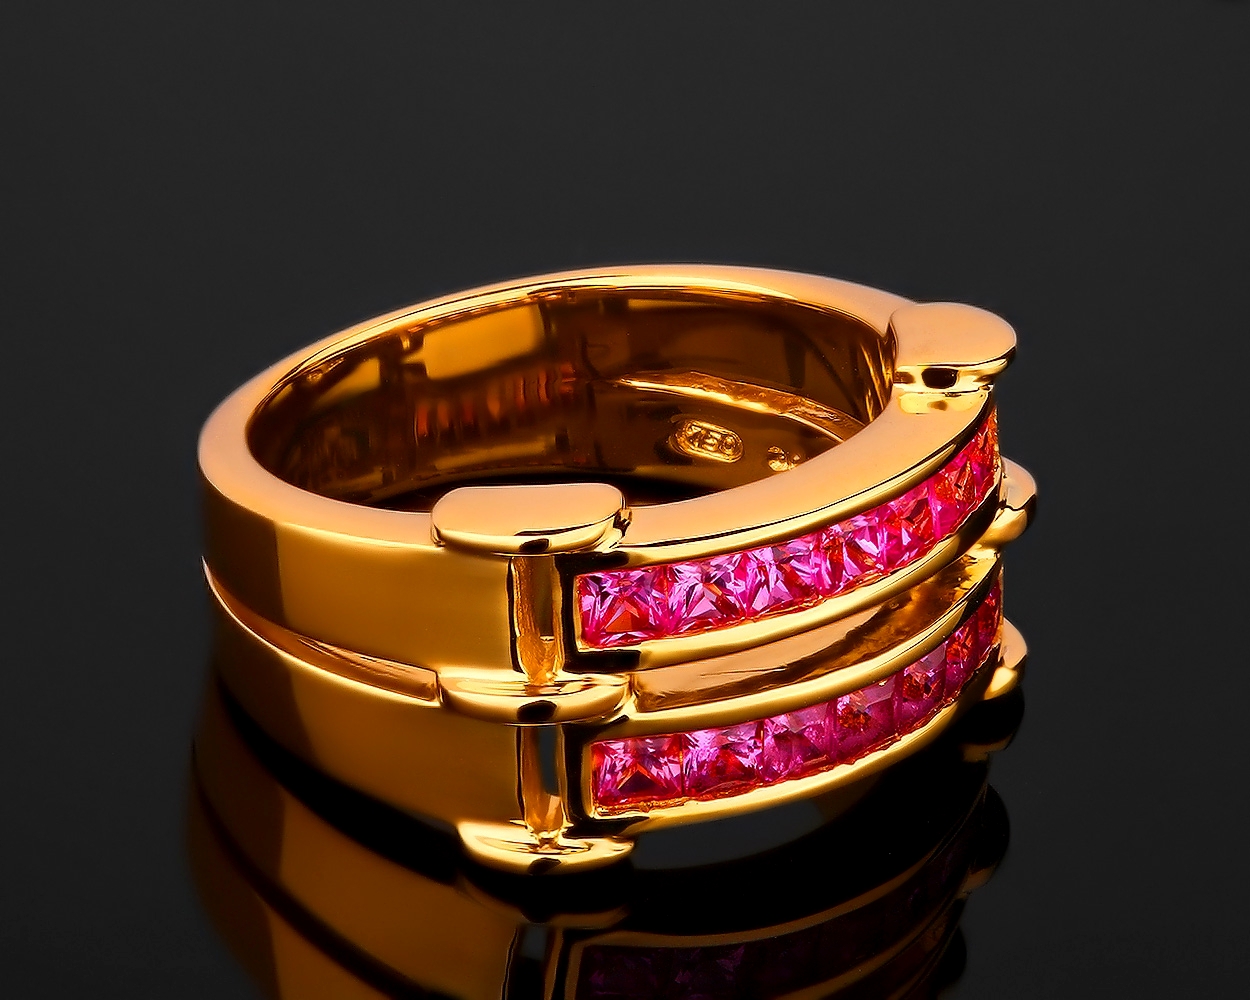 Швейцарское сапфировое кольцо Adler Leyla